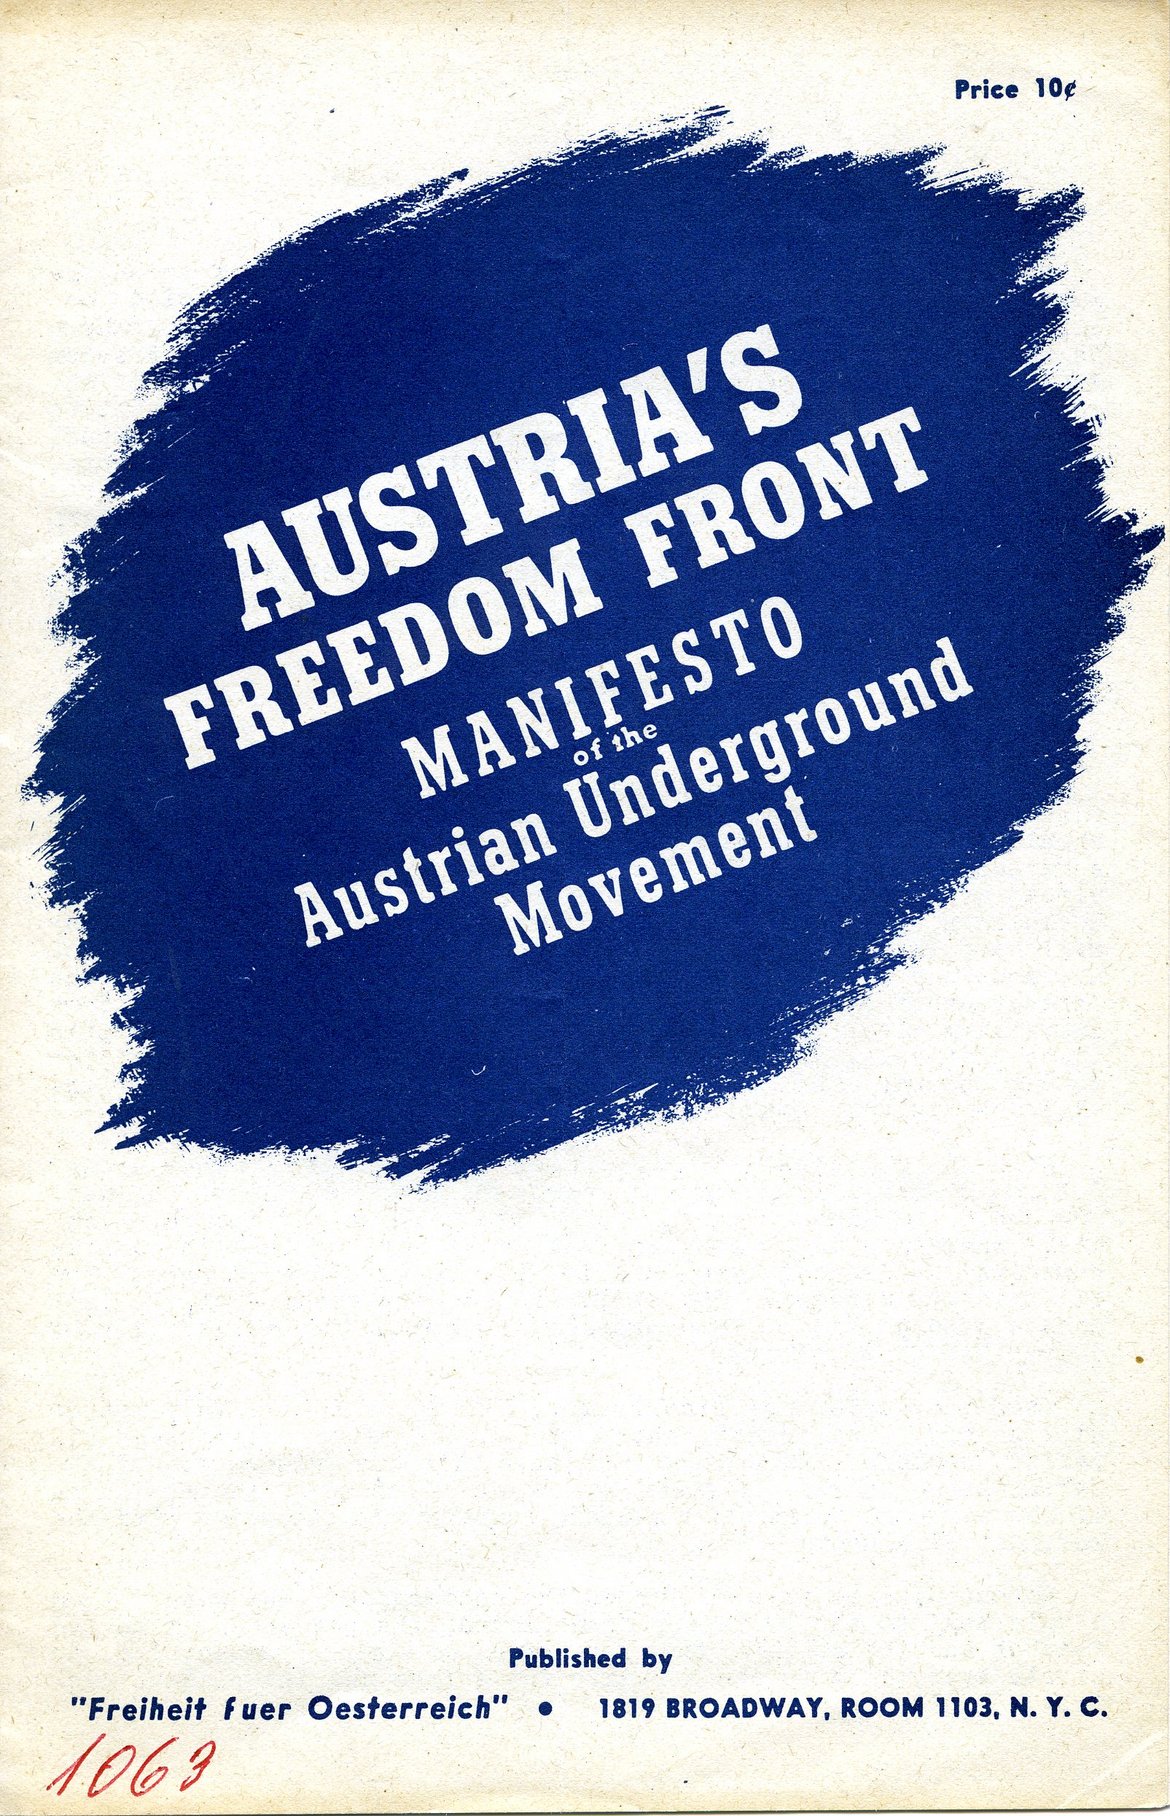 Programm der "Austria's Freedom Front"